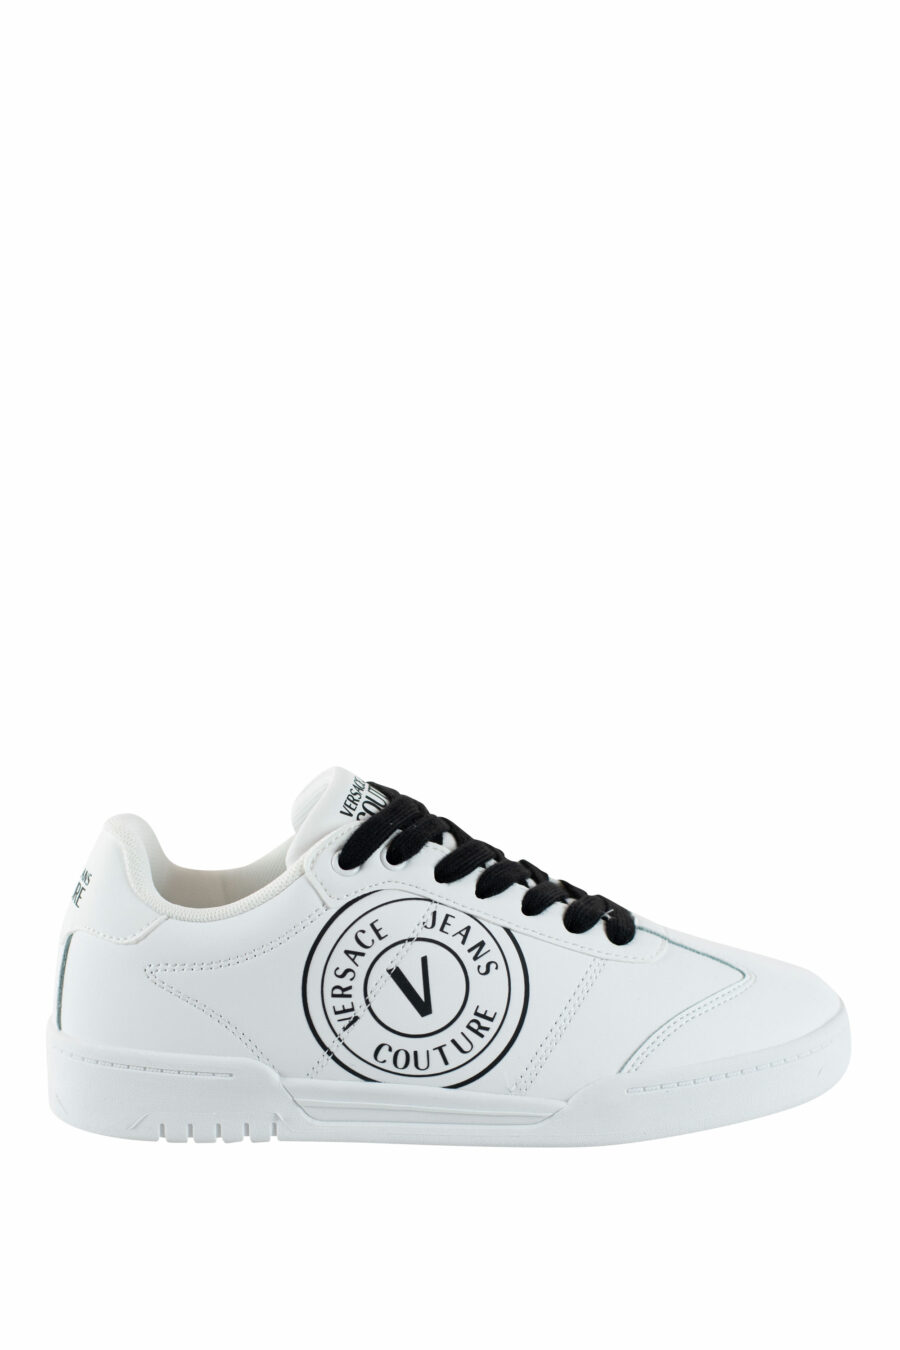 Zapatillas blancas con logo circular y cordones negros - IMG 4487